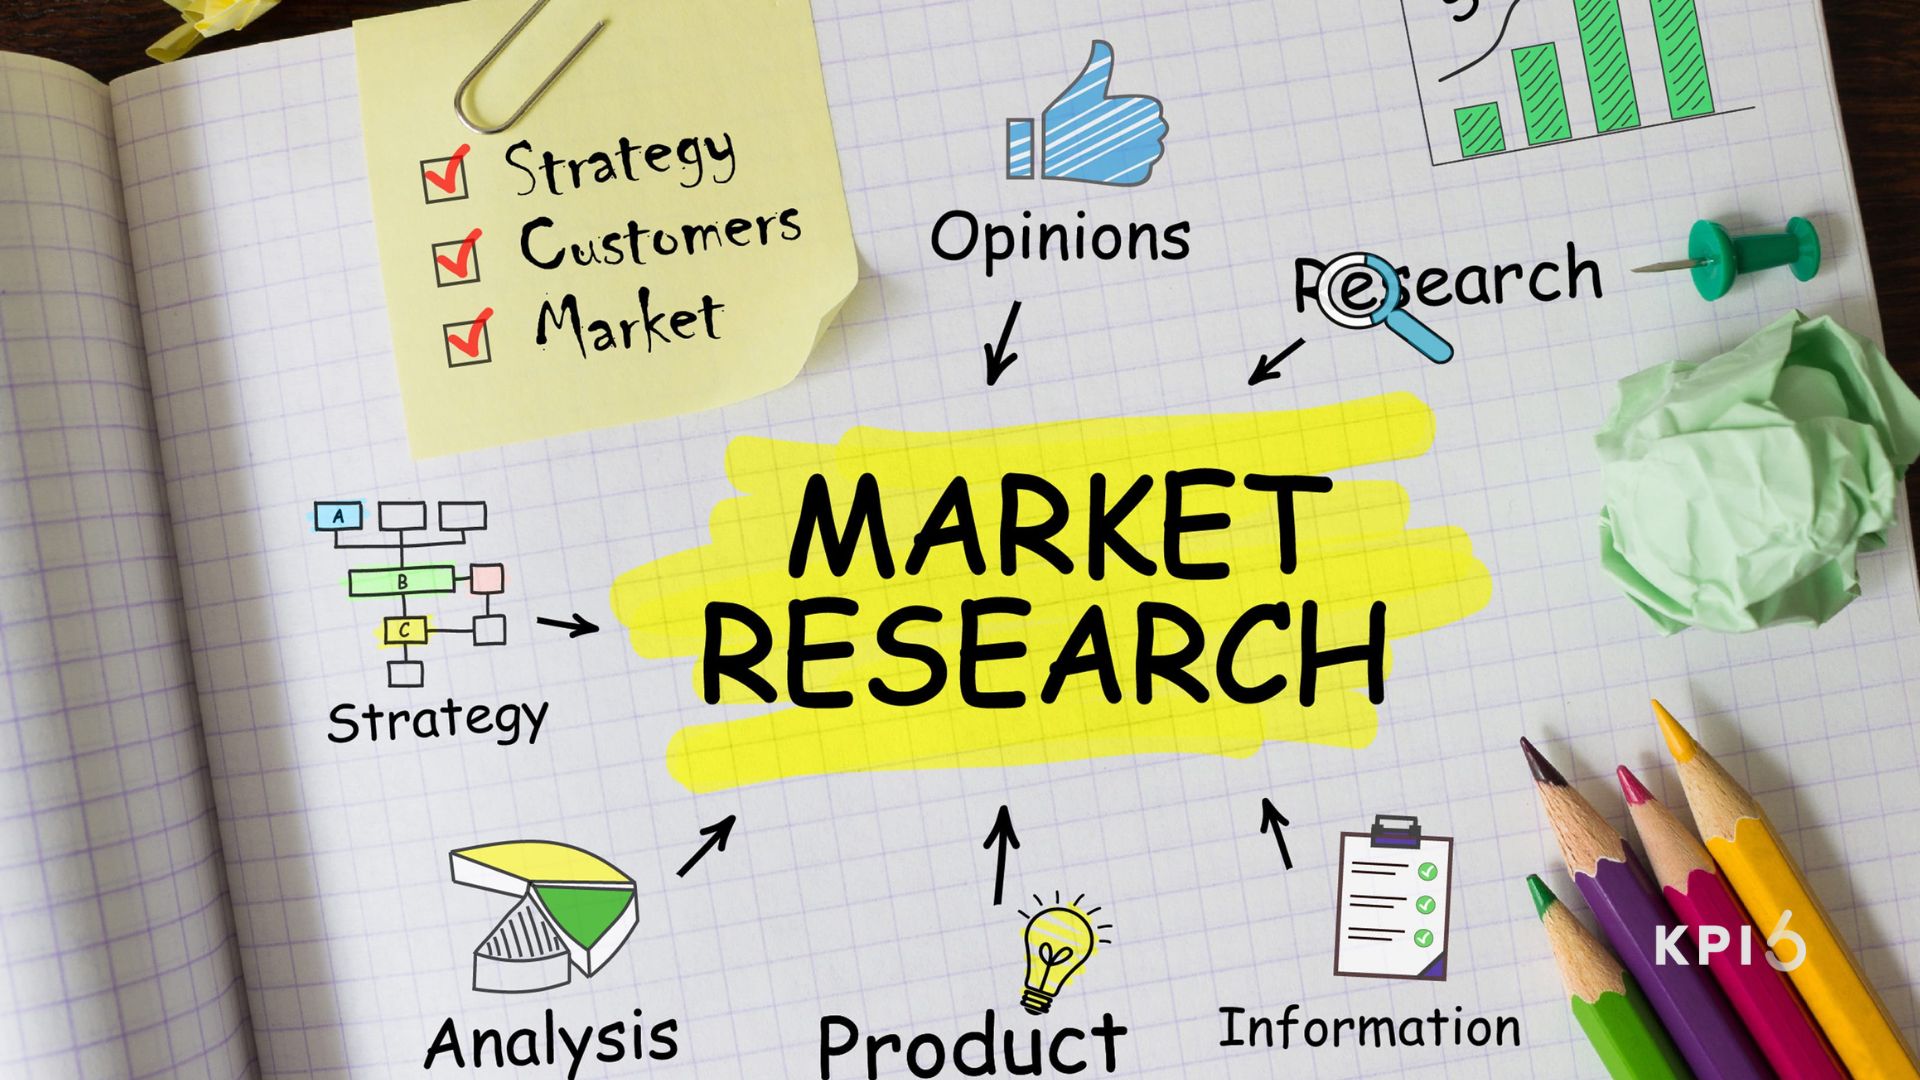 market research - Kpi6 - Intelligenza Artificiale in Market Research: L'Approccio Avanzato di KPI6